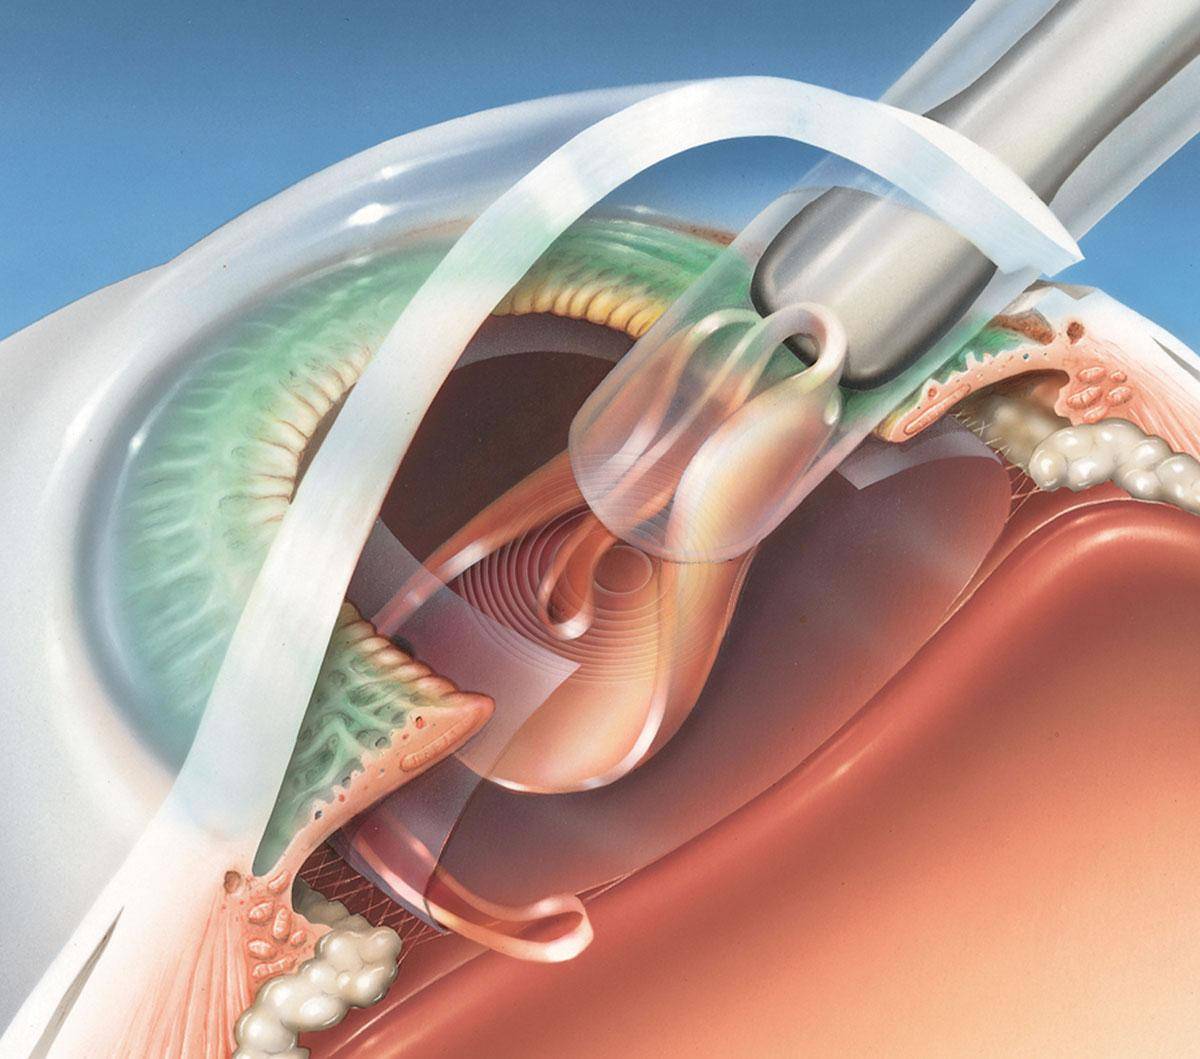 Экстракапсулярная экстракция катаракты без имплантации иол